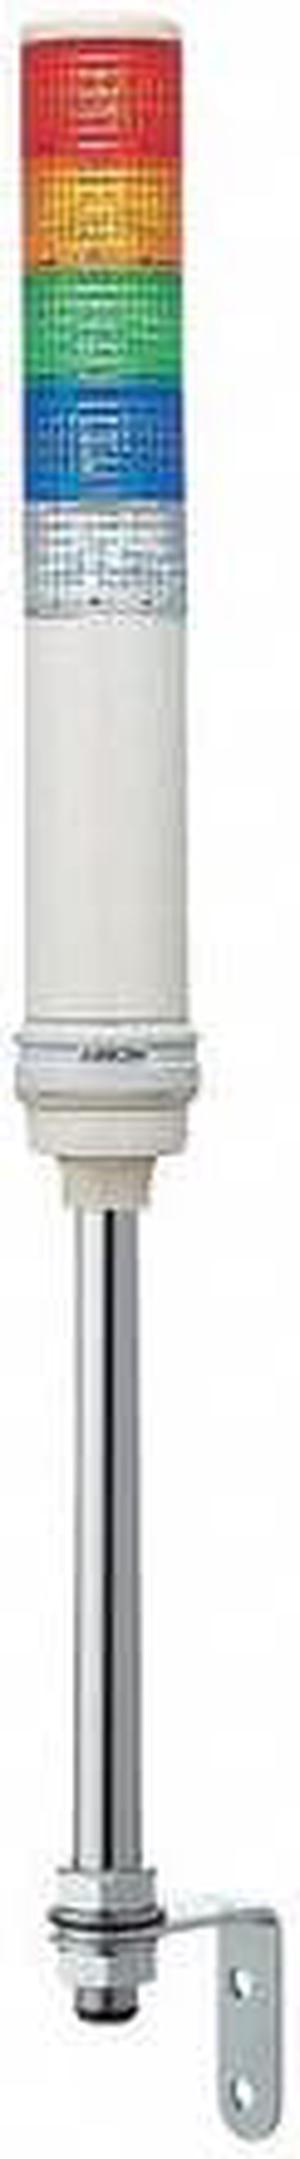 SCHNEIDER ELECTRIC XVC4B55S Tower Light,40mm,0.17A,Rd,Org,Gr,Bl,Clr